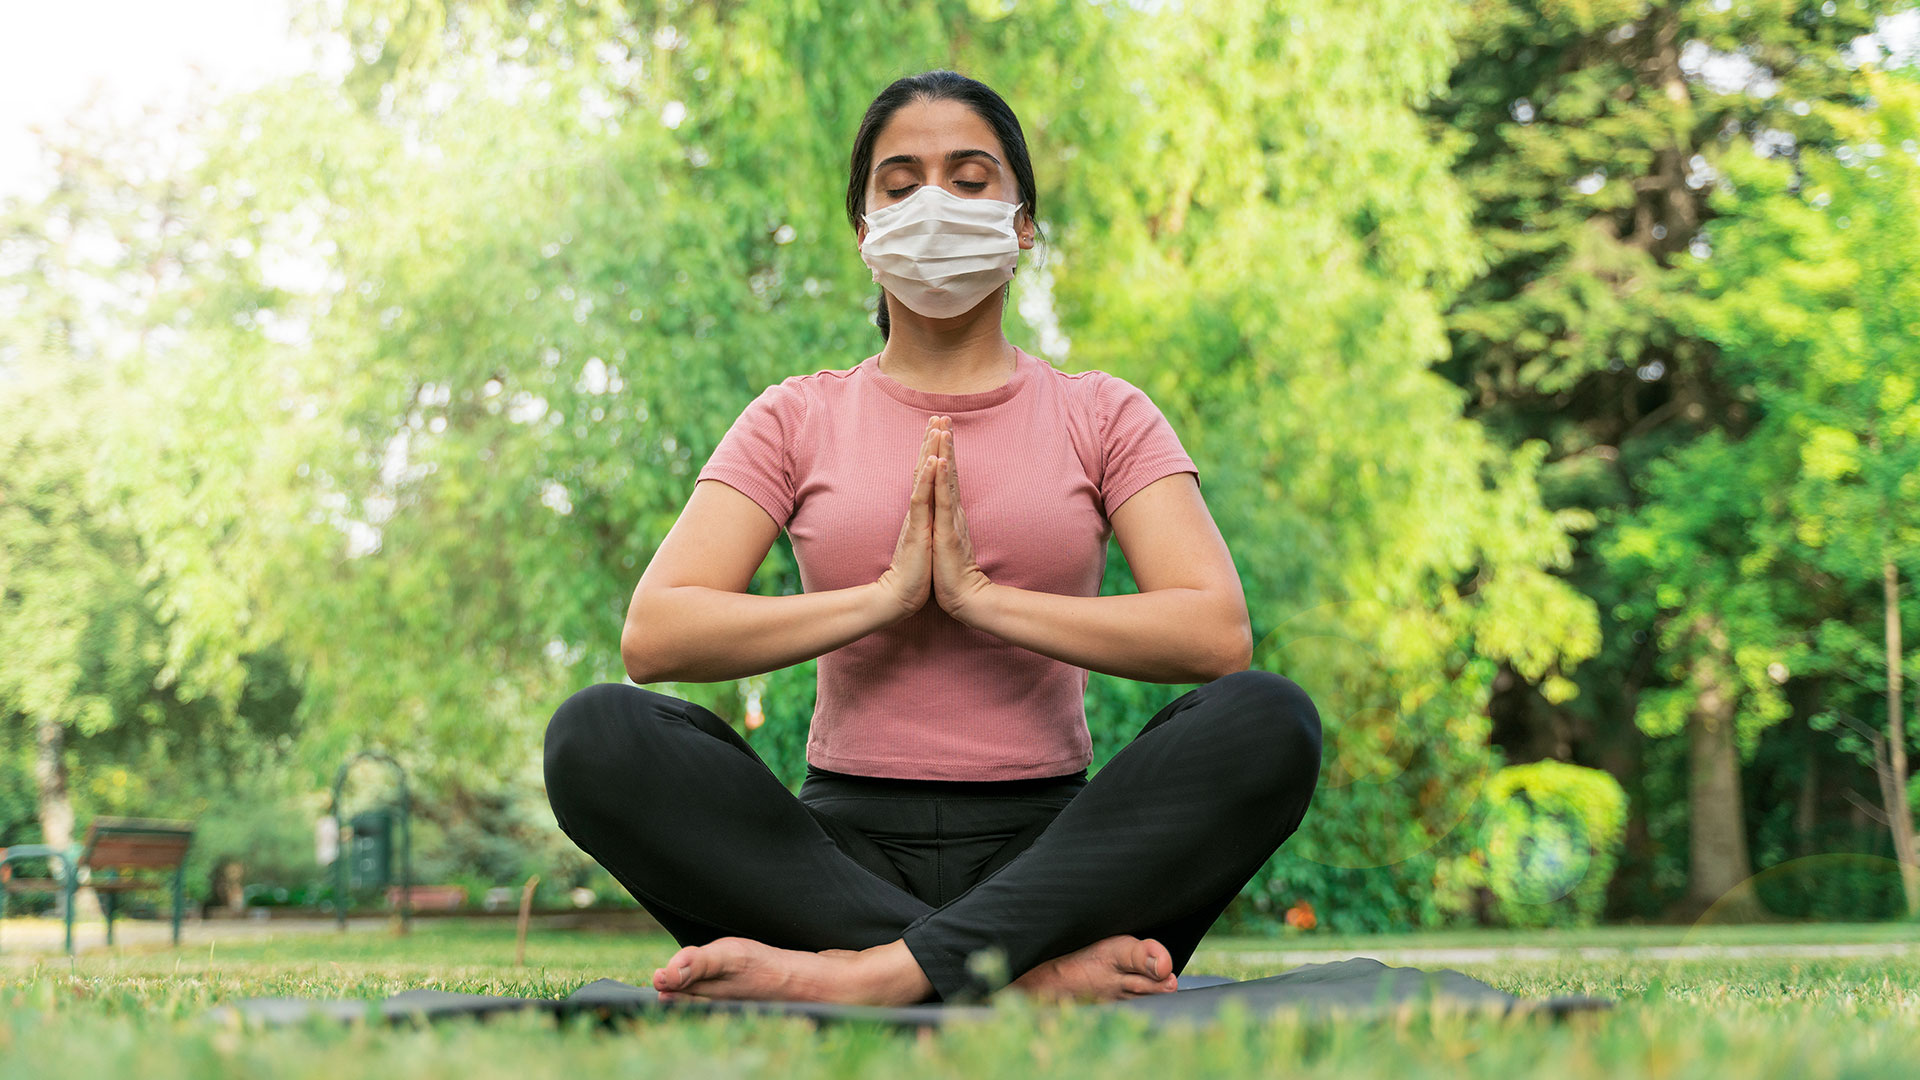 Las prácticas de meditación ayudan a tener una mejor concentración y a reducir pensamientos negativos en relación a la pandemia del coronavirus /Getty Images